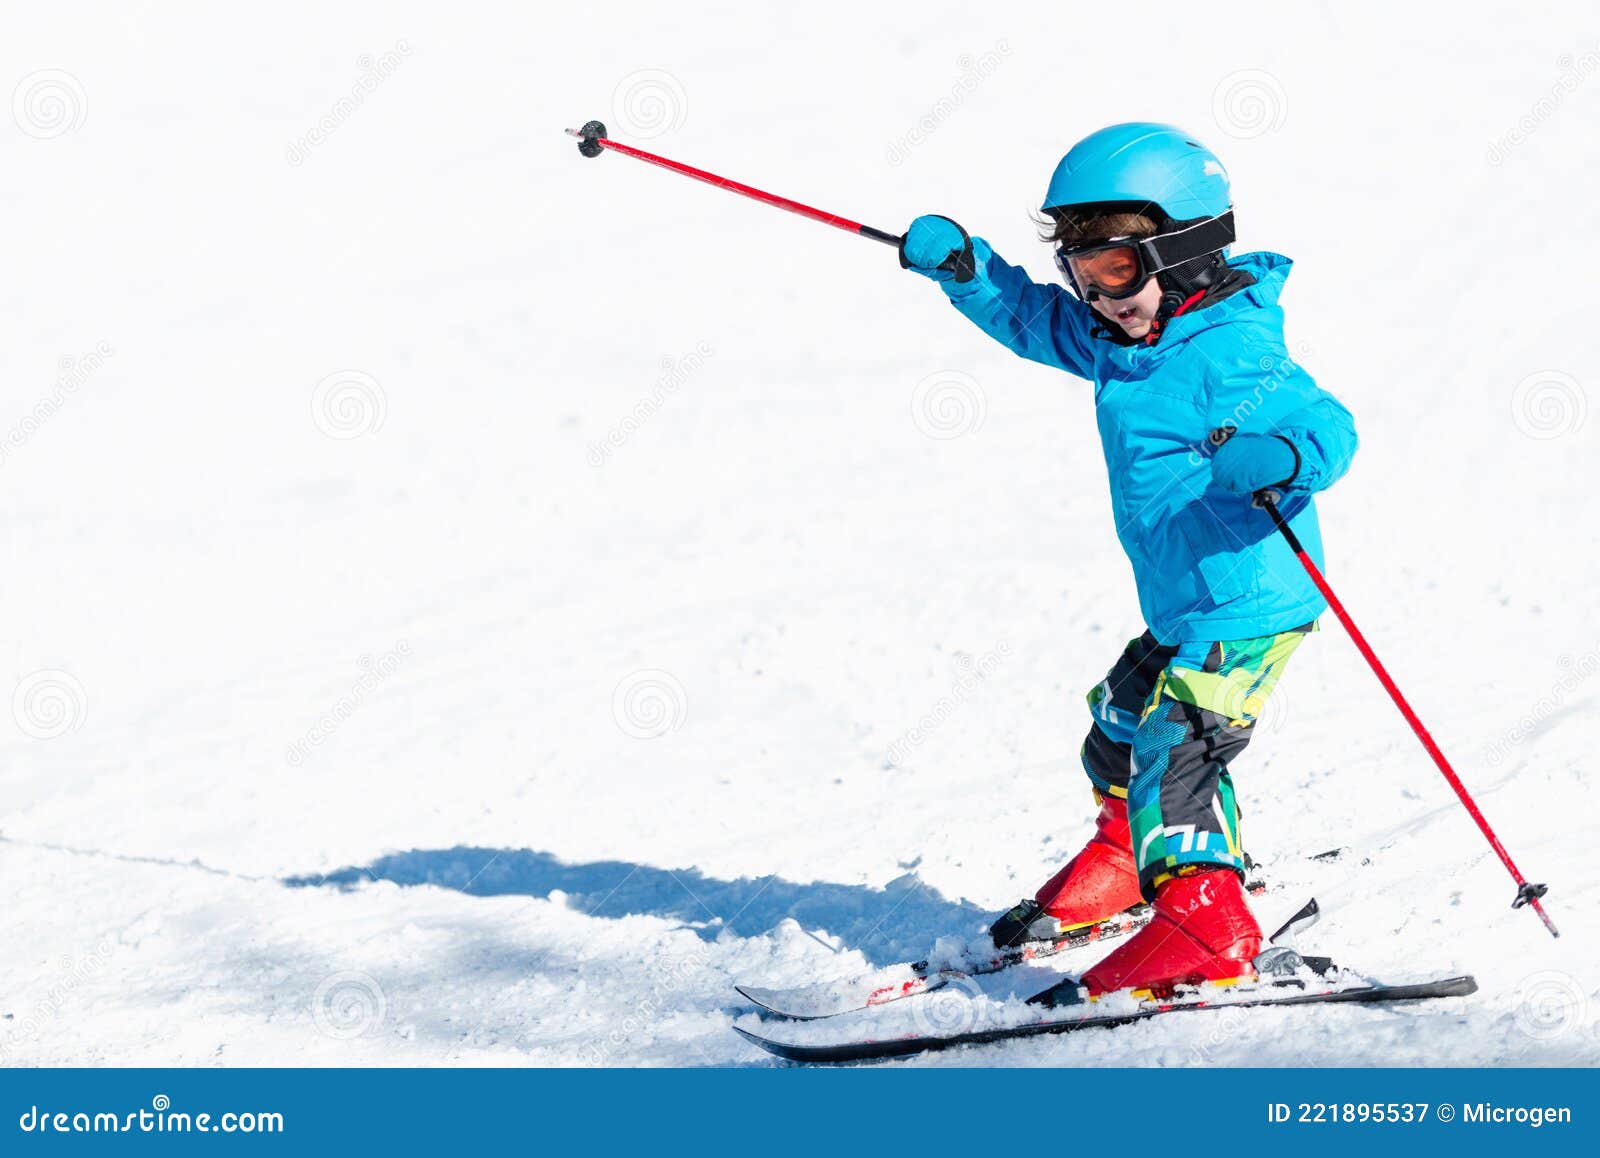 Маленькие лыжники. Дети на лыжах. Горнолыжный спорт дети. Мальчик на лыжах. Лыжные гонки дети.